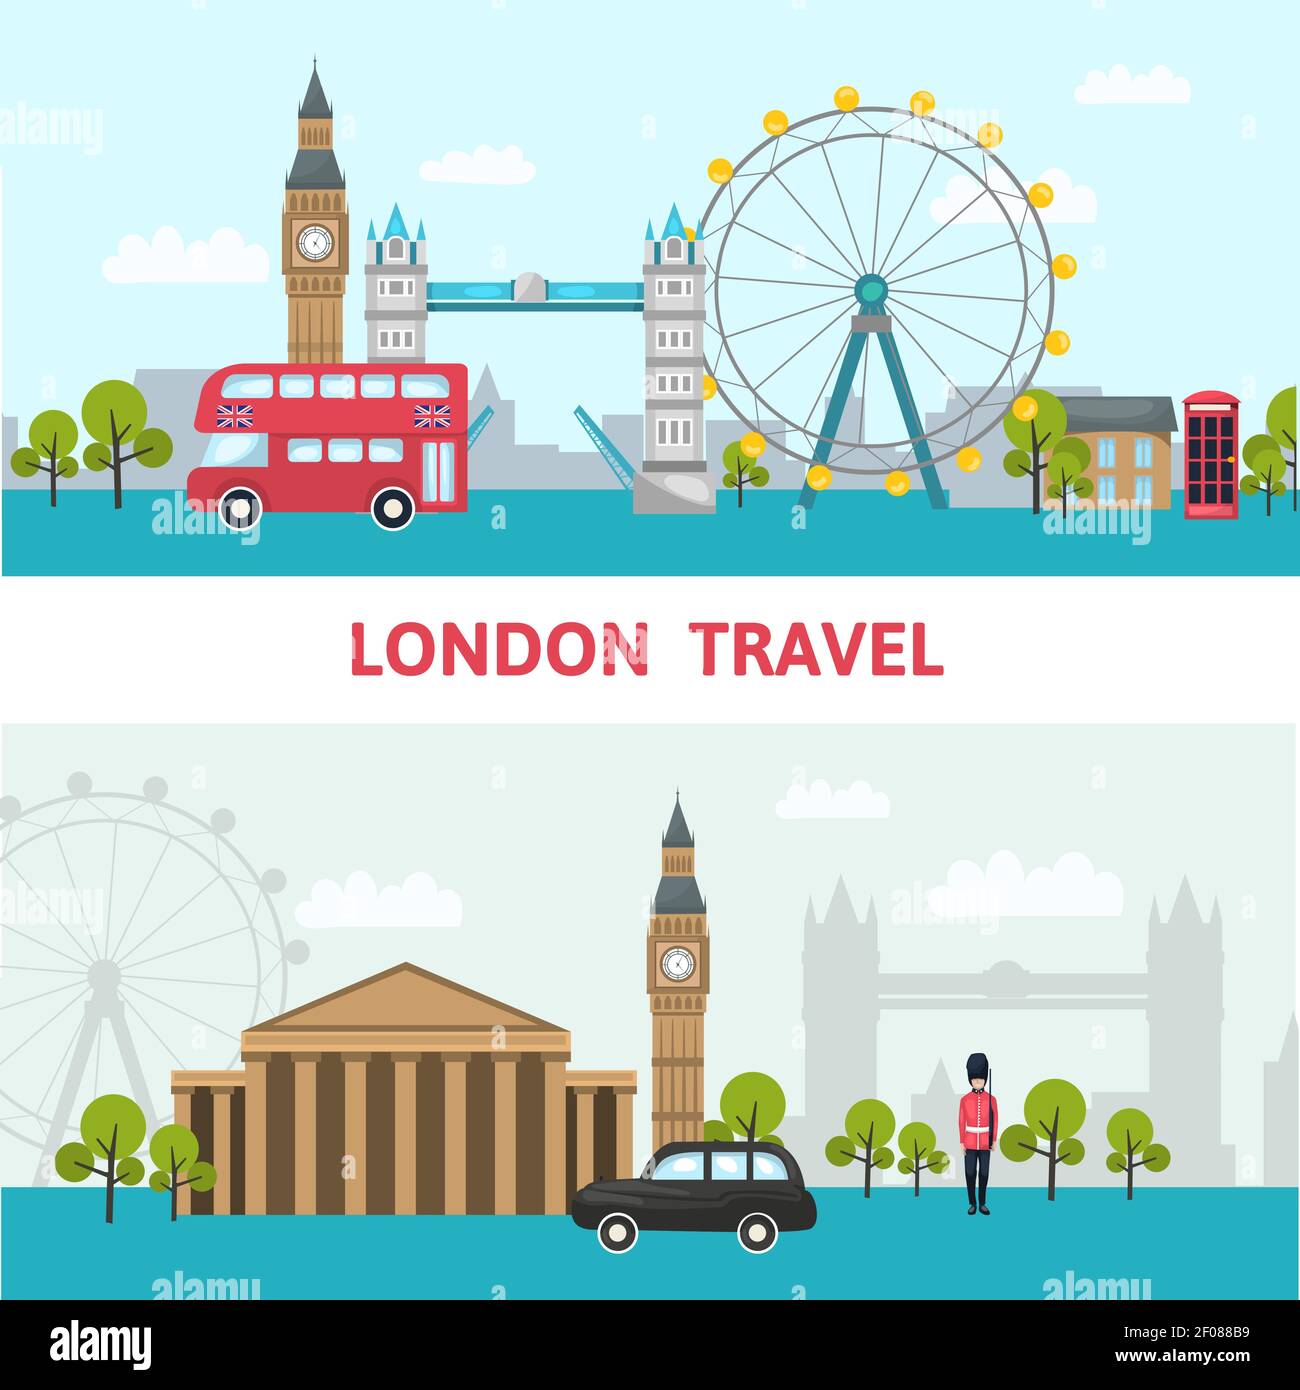 Affiche sur les gratte-ciel de Londres avec les principaux sites et voyages de Londres de l'illustration city vector Illustration de Vecteur